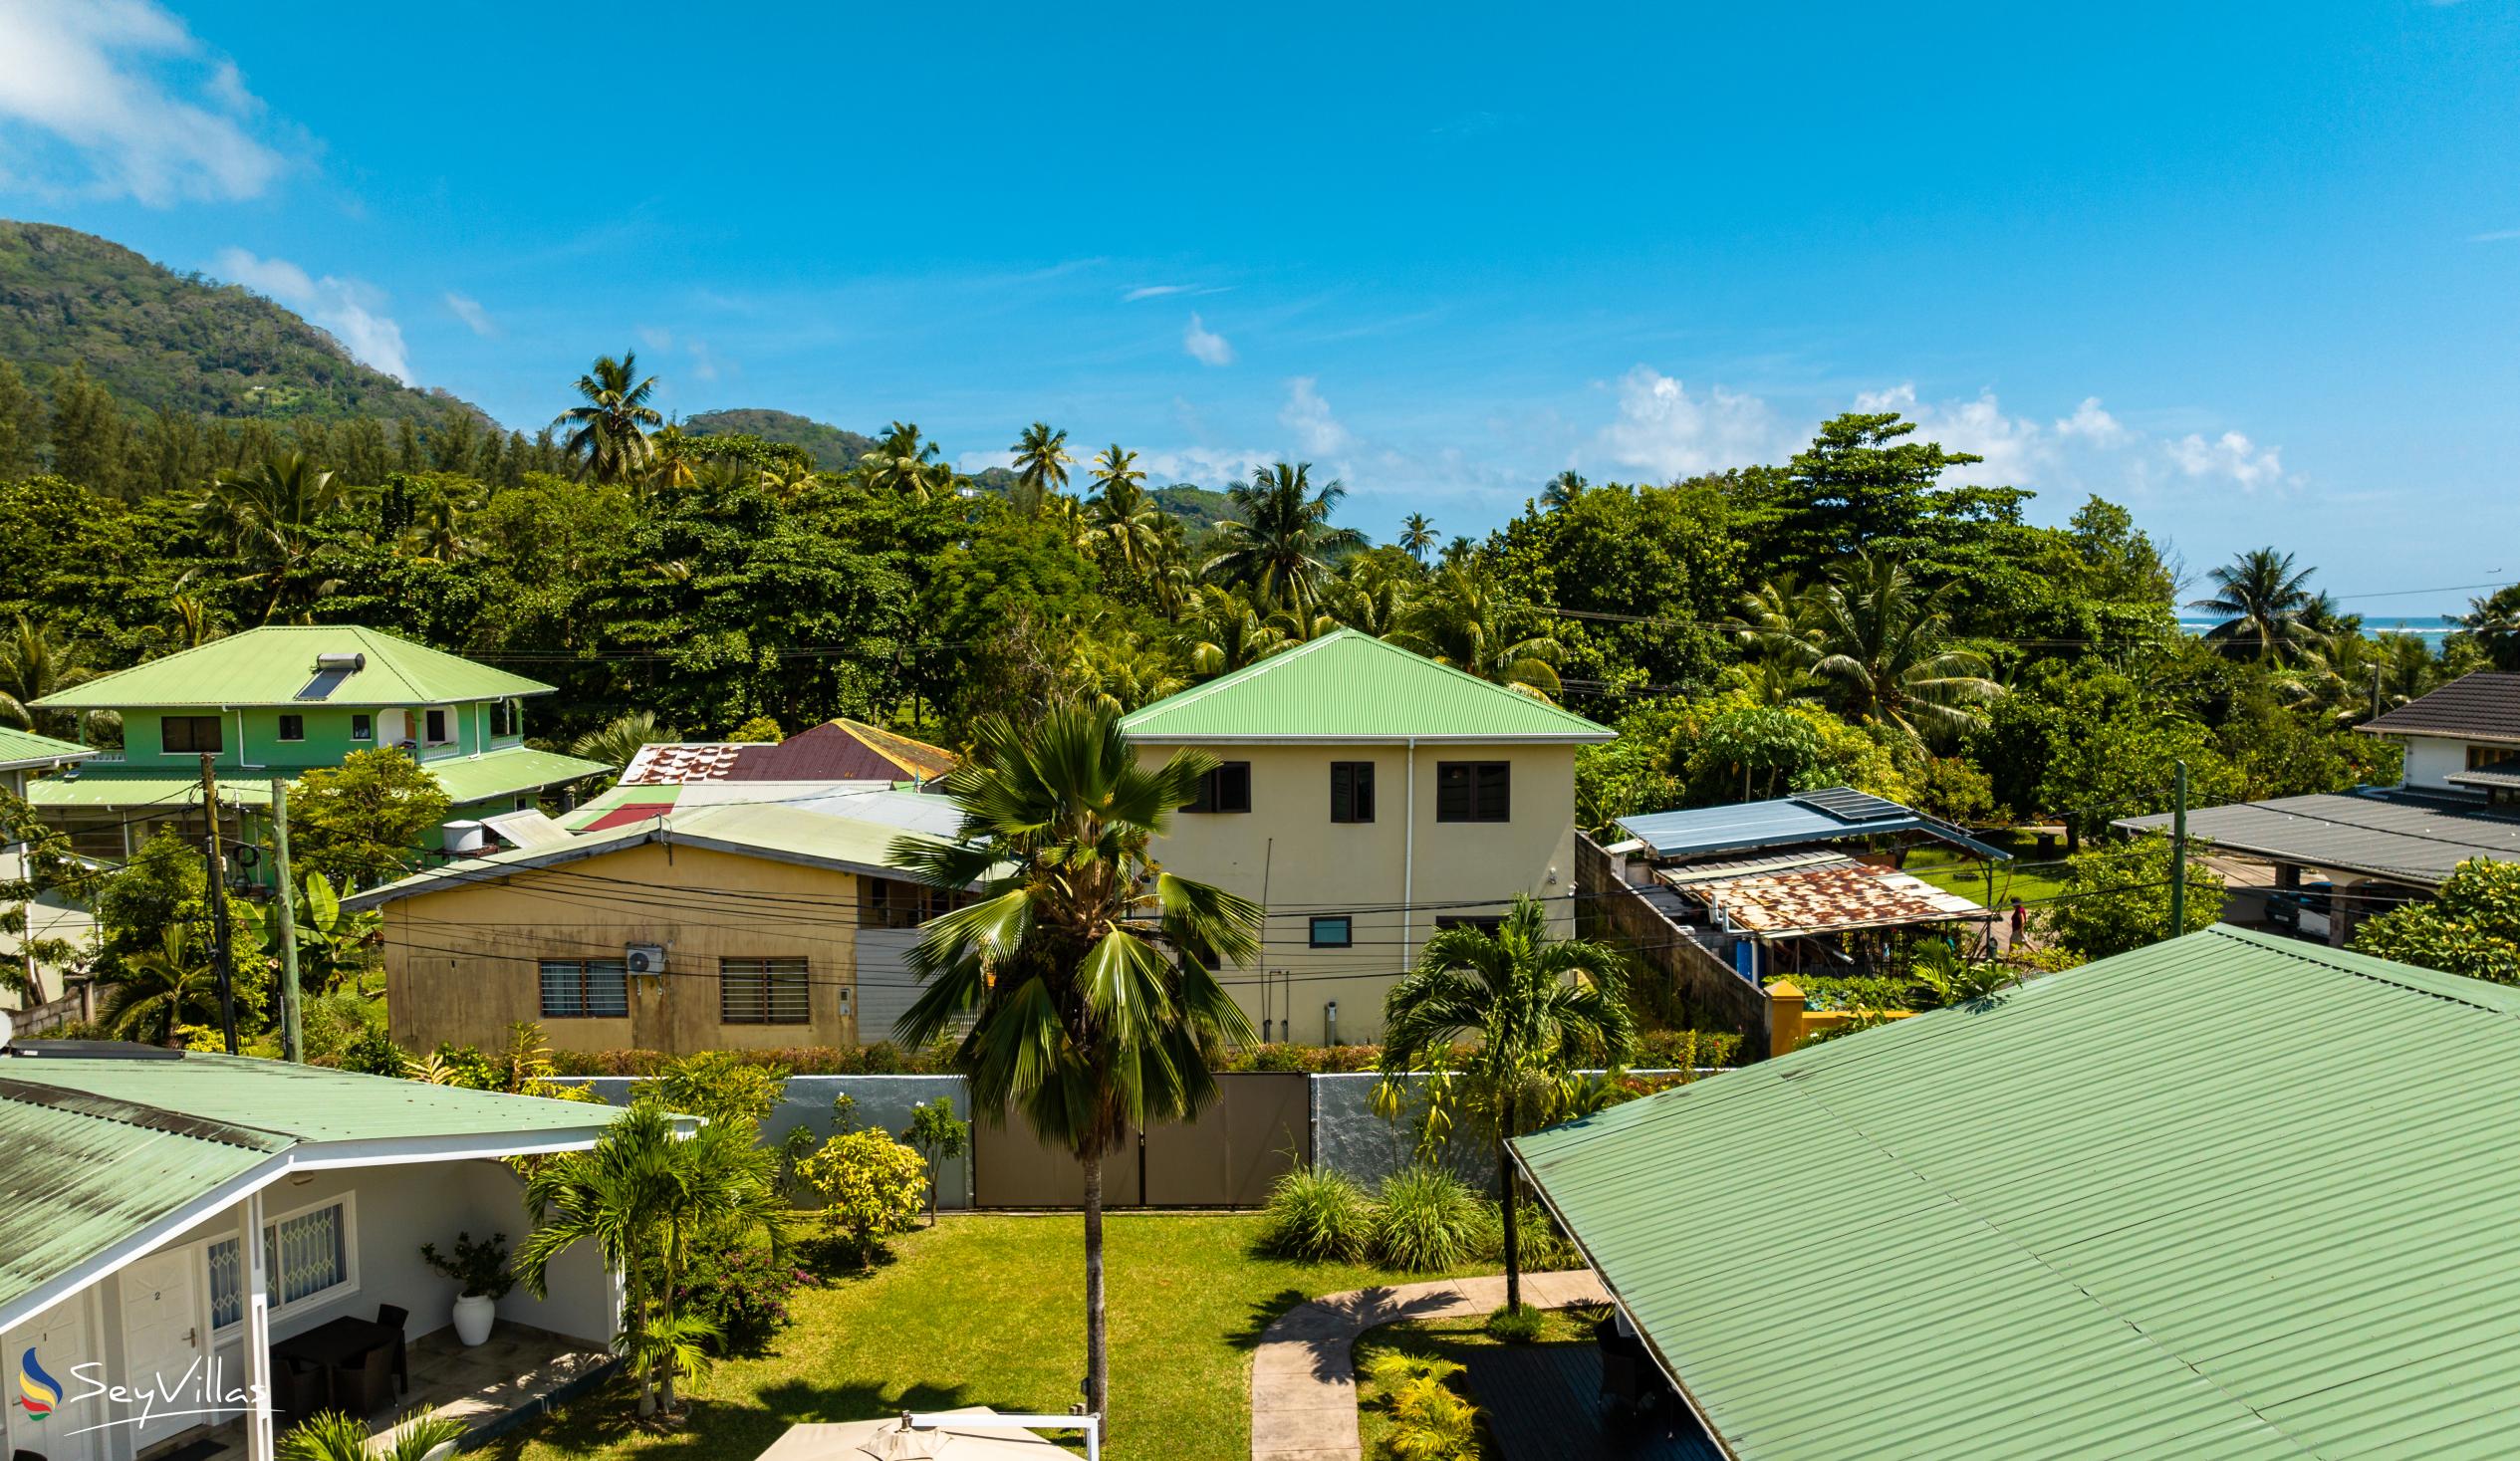 Foto 91: Hotel La Roussette - Lage - Mahé (Seychellen)